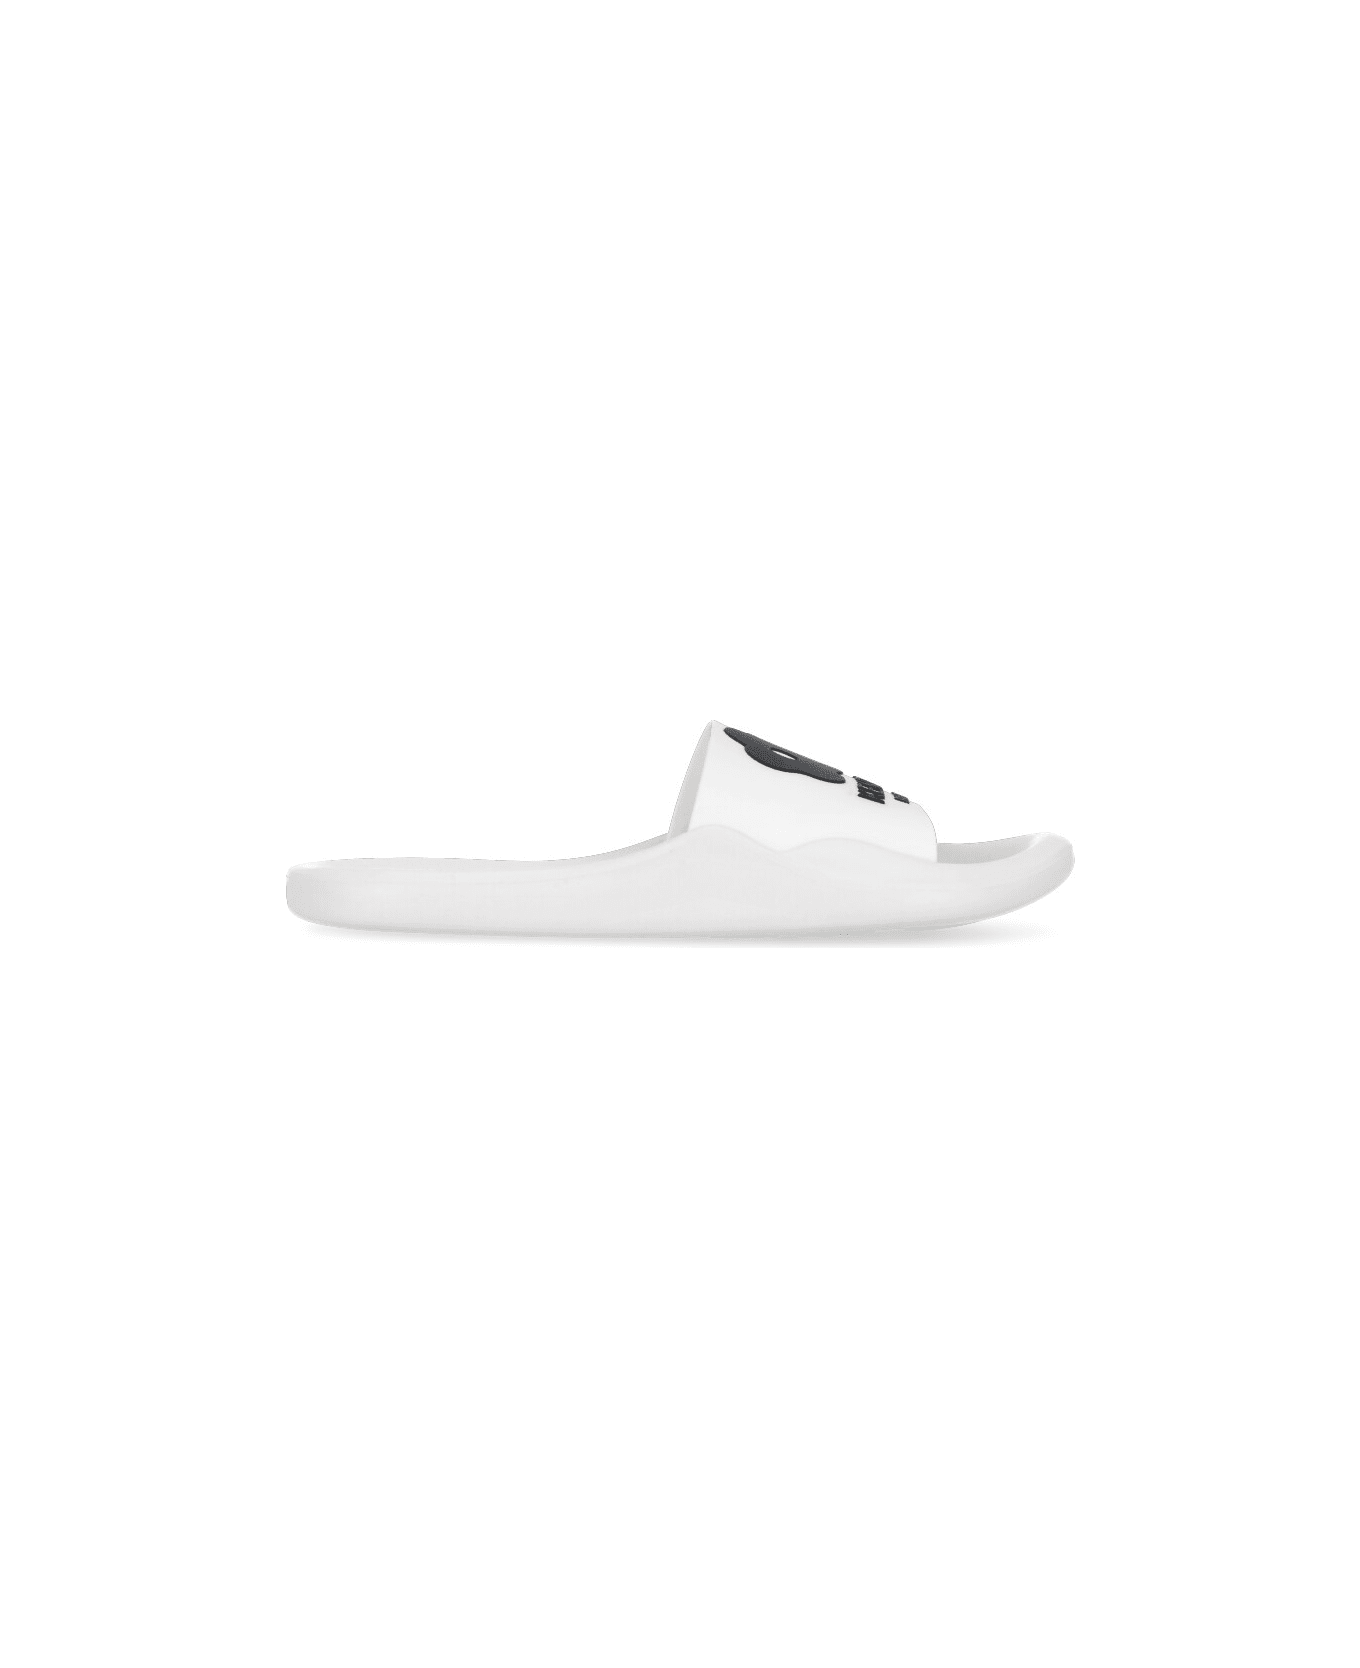 Kenzo Pool Slippers - White